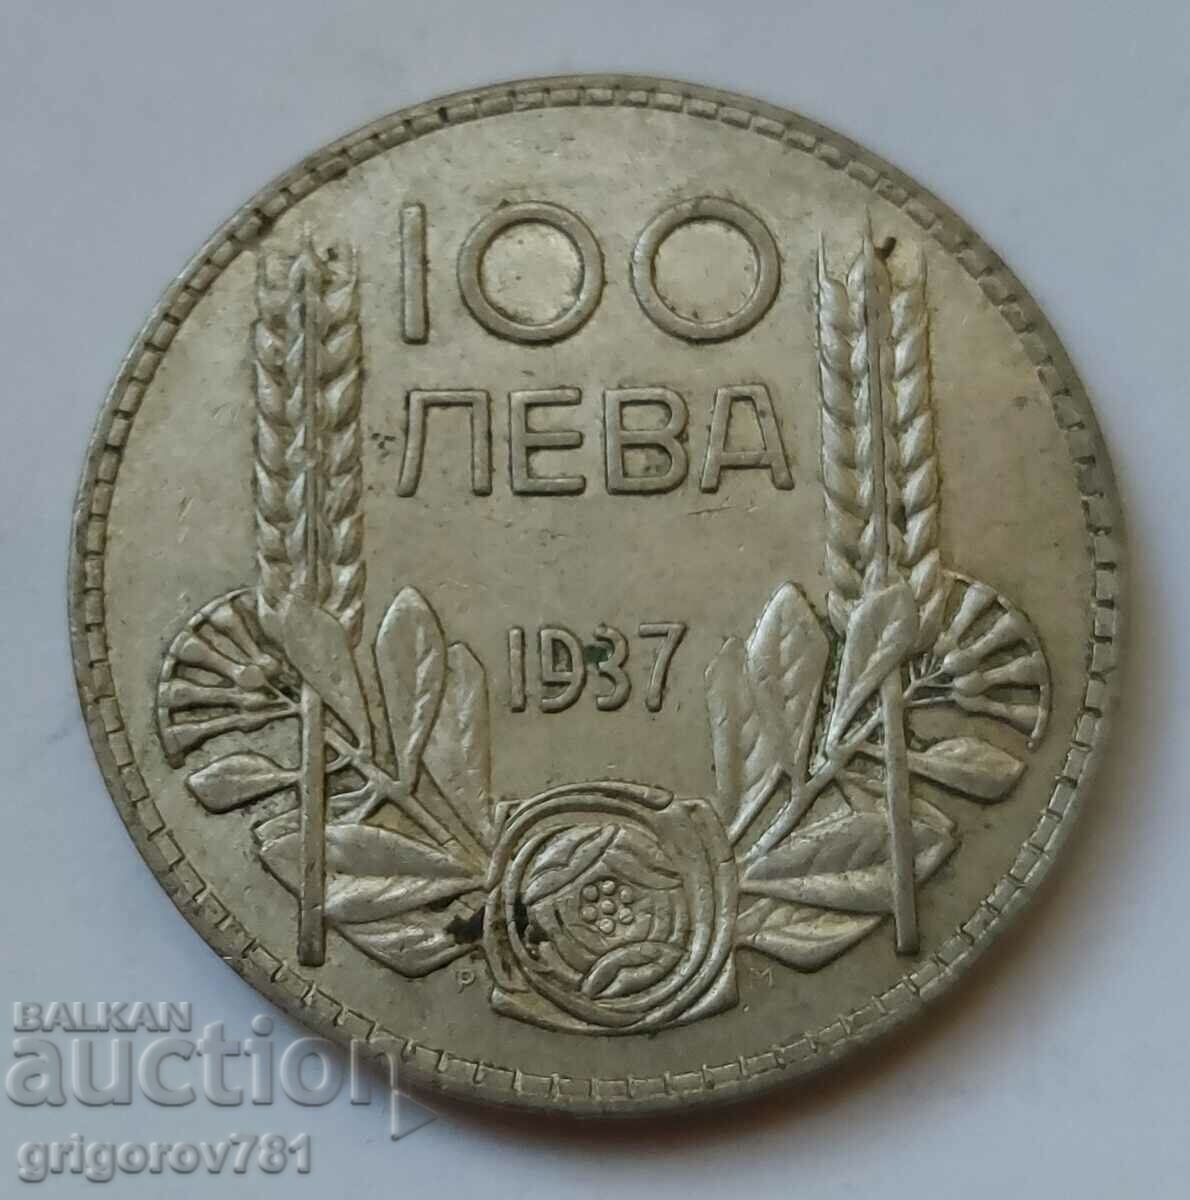 100 лева сребро България 1937 -  сребърна монета #94